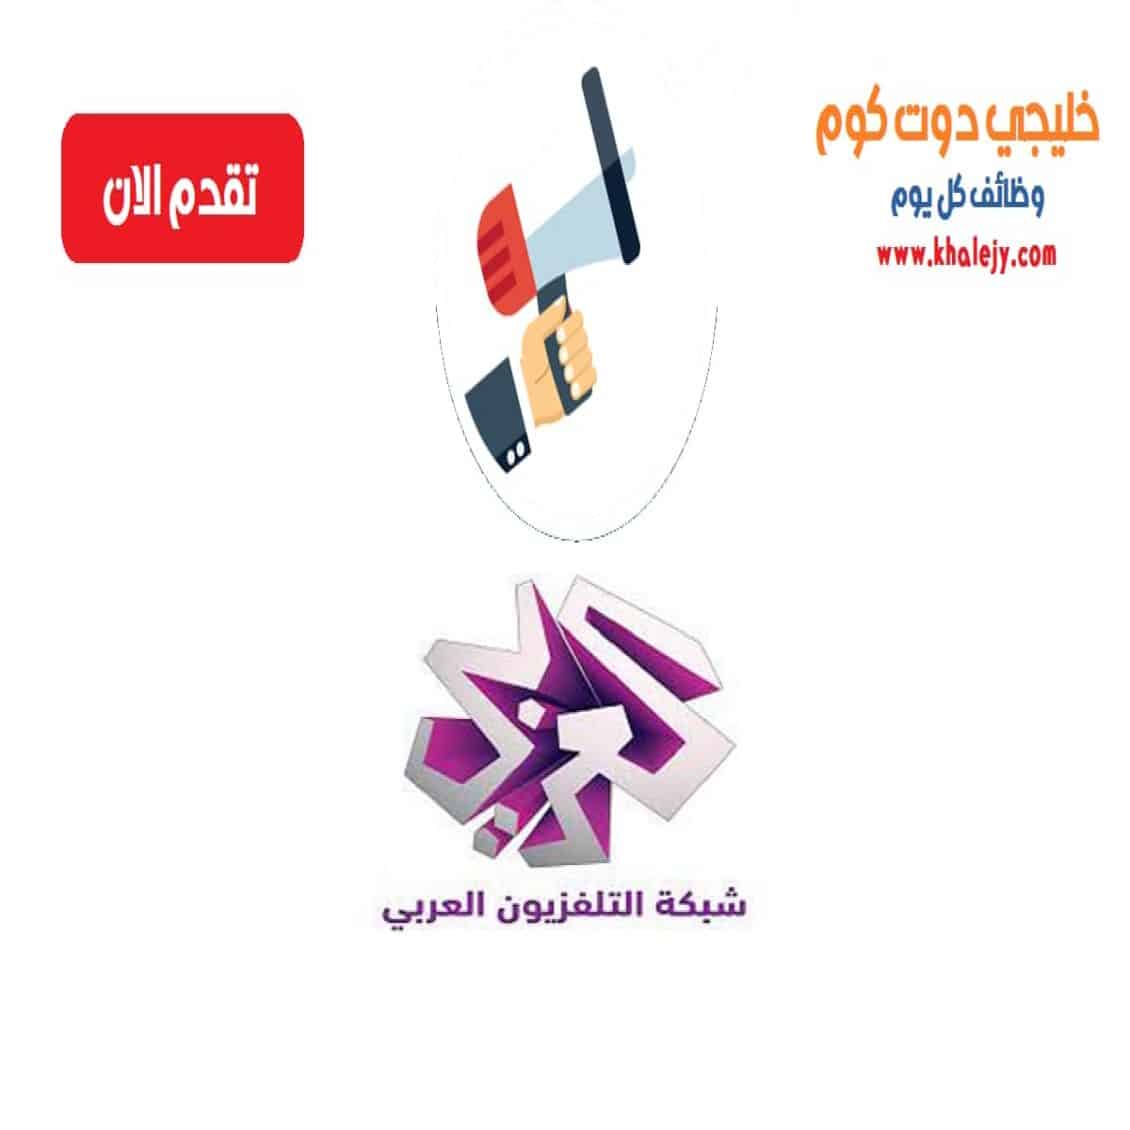 وظائف التلفزيون العربي في قطر للمواطنين والاجانب